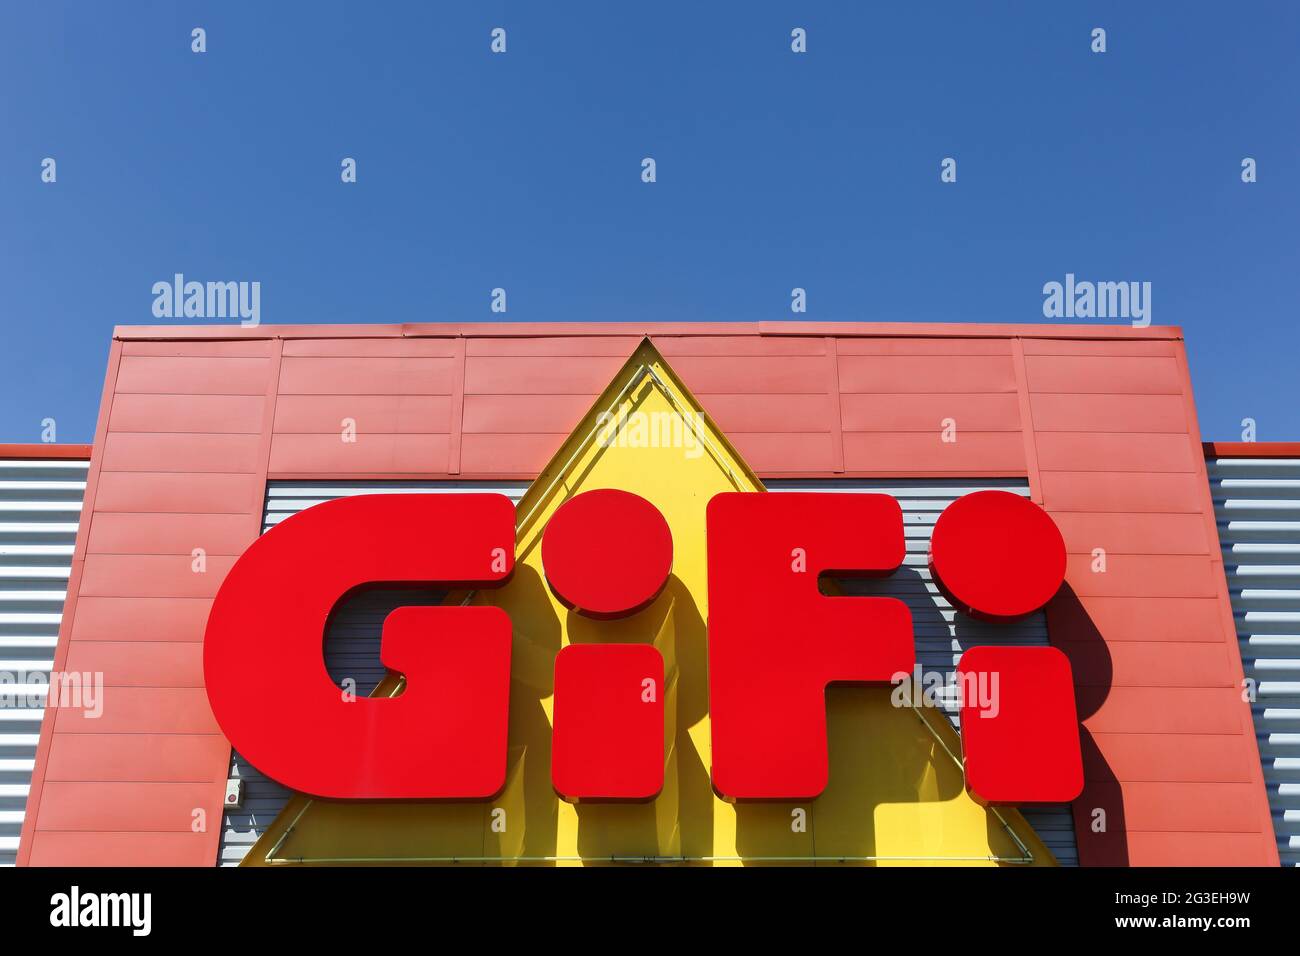 Villefranche, Francia - 18 de junio de 2017: Logotipo de Gifi en una pared.  Gifi es una cadena francesa de descuentos con casi 500 tiendas, la mayoría  en Francia Fotografía de stock - Alamy